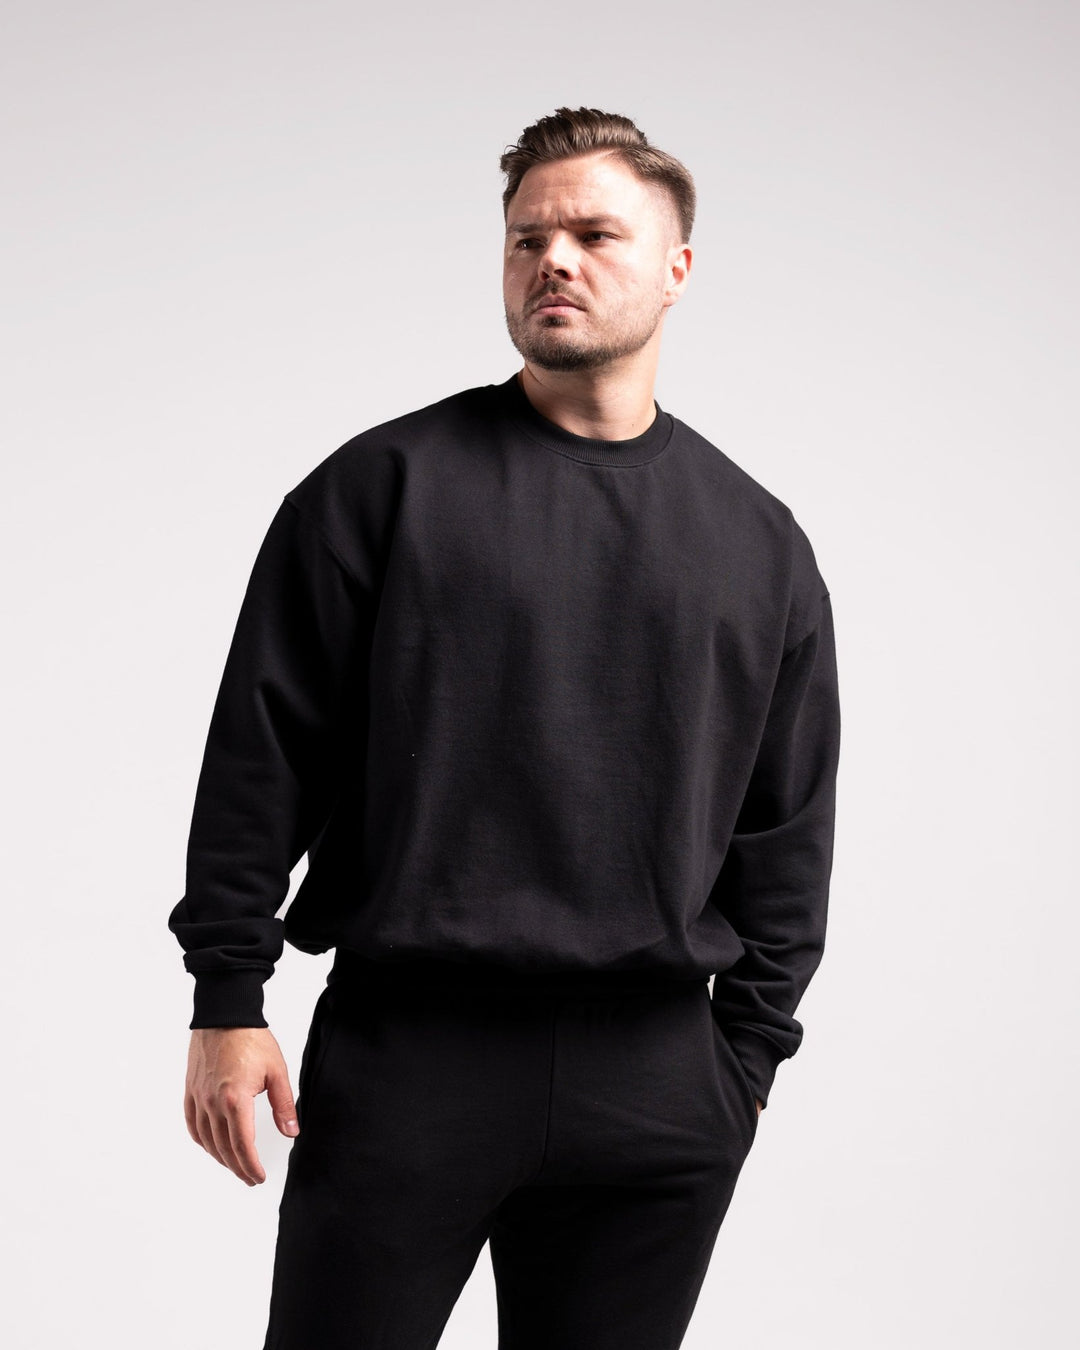 Oversized Crewneck Sweater (Black) - HQ Basics - Athletic Aesthetics